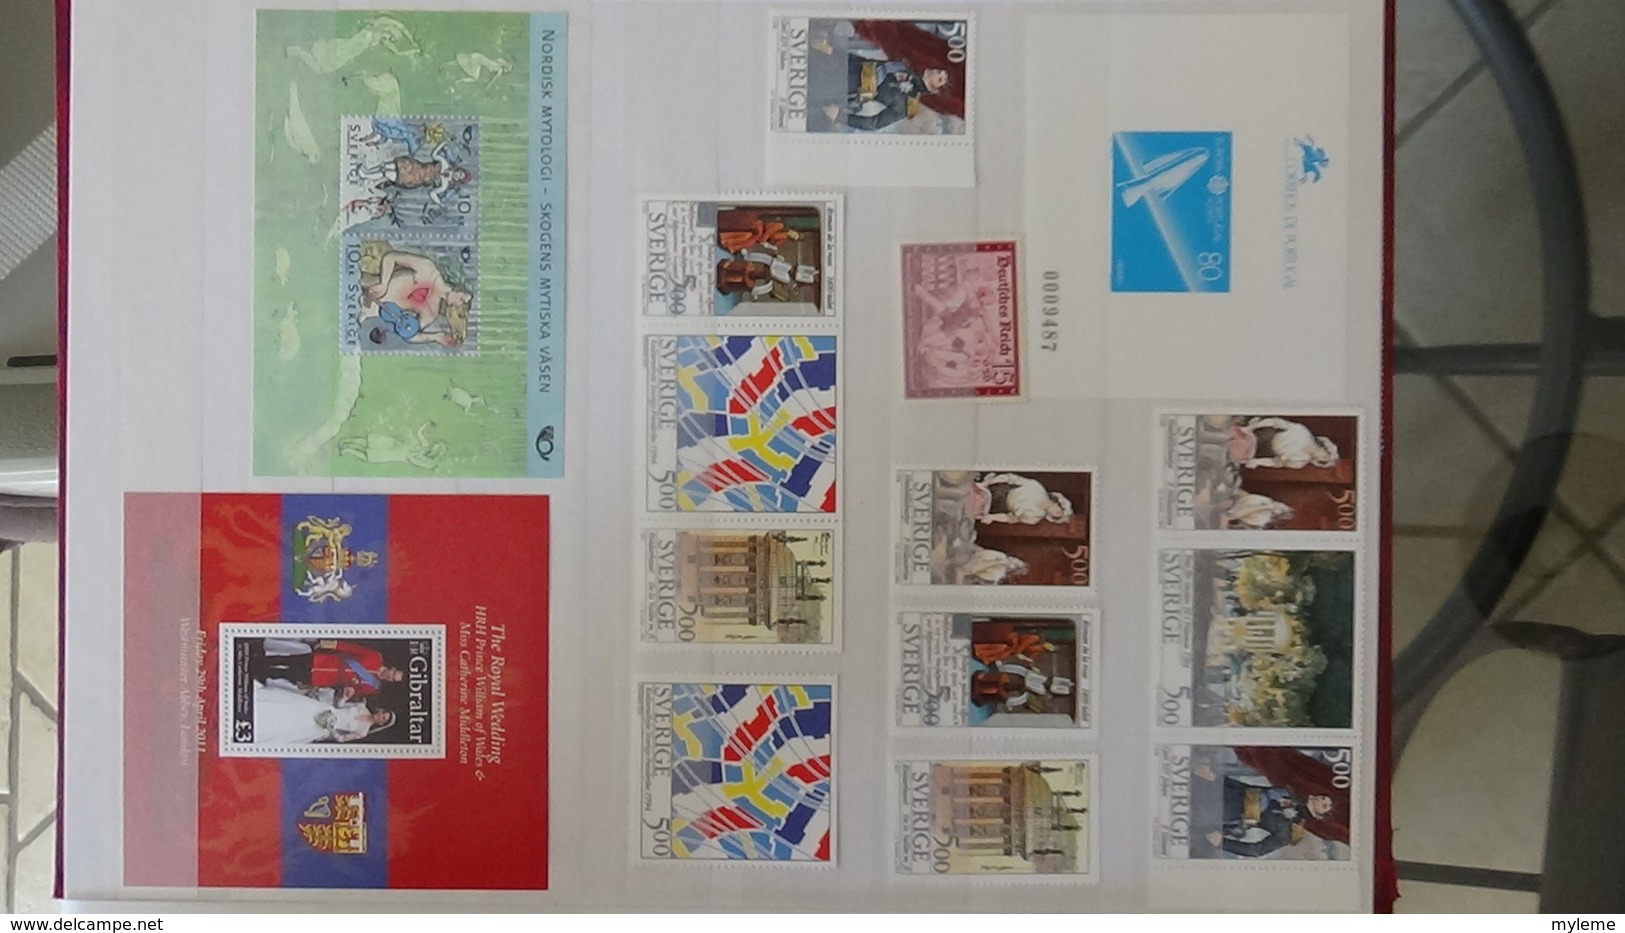 Très belle collection timbres et blocs ** du monde côte sympa.